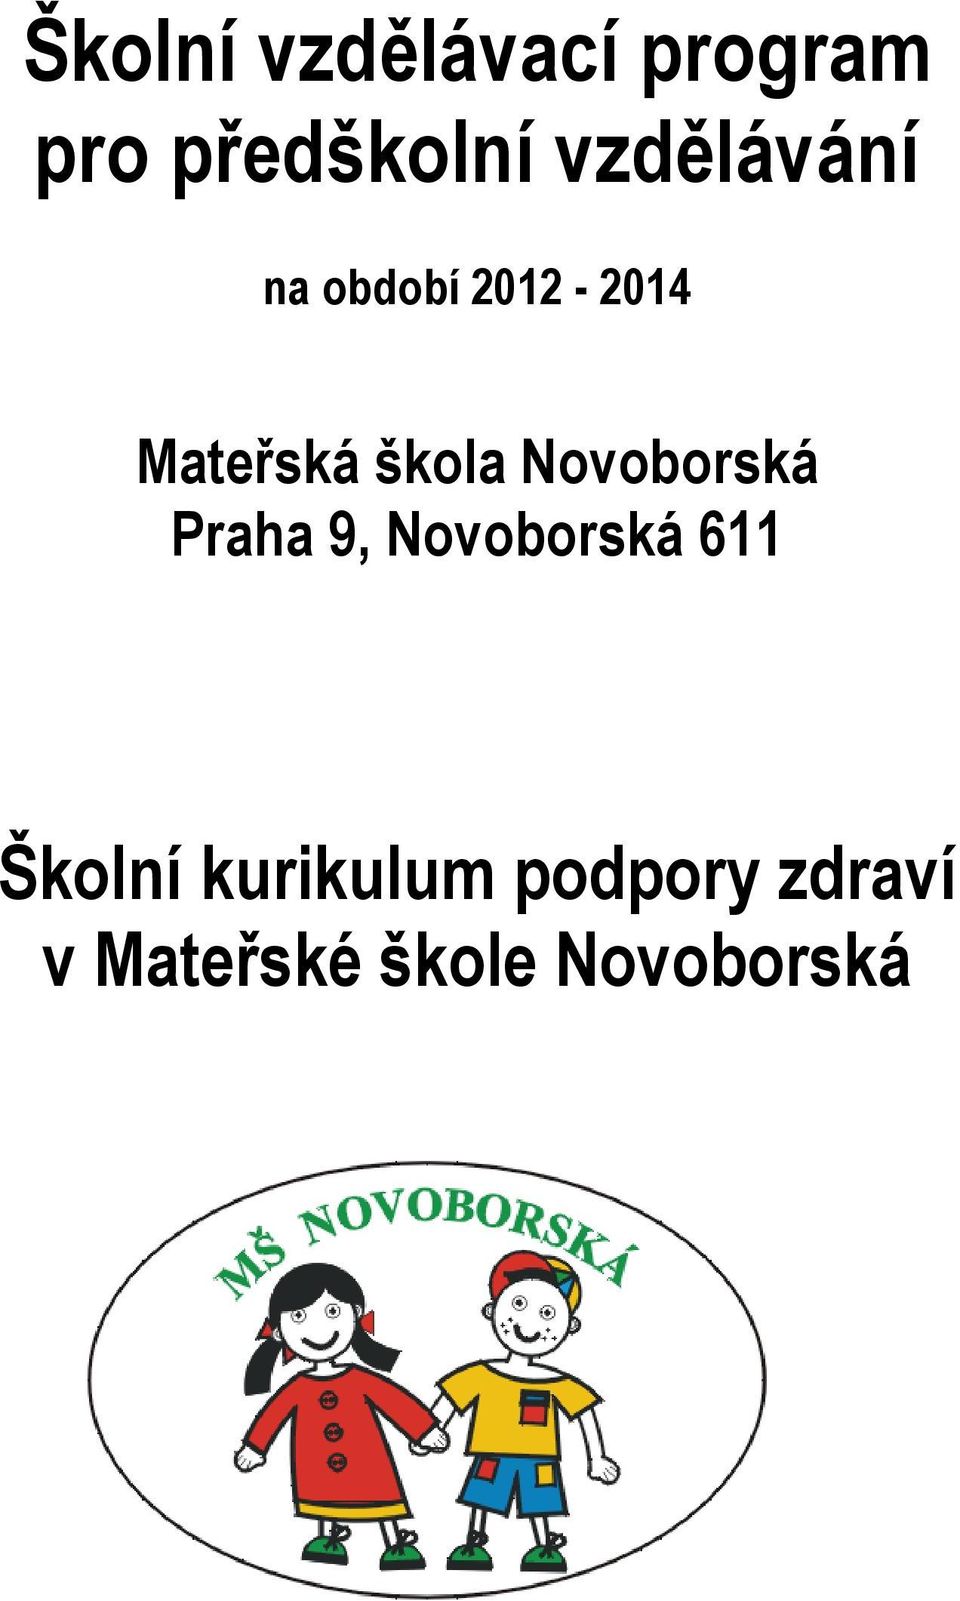 Novoborská Praha 9, Novoborská 611 Školní